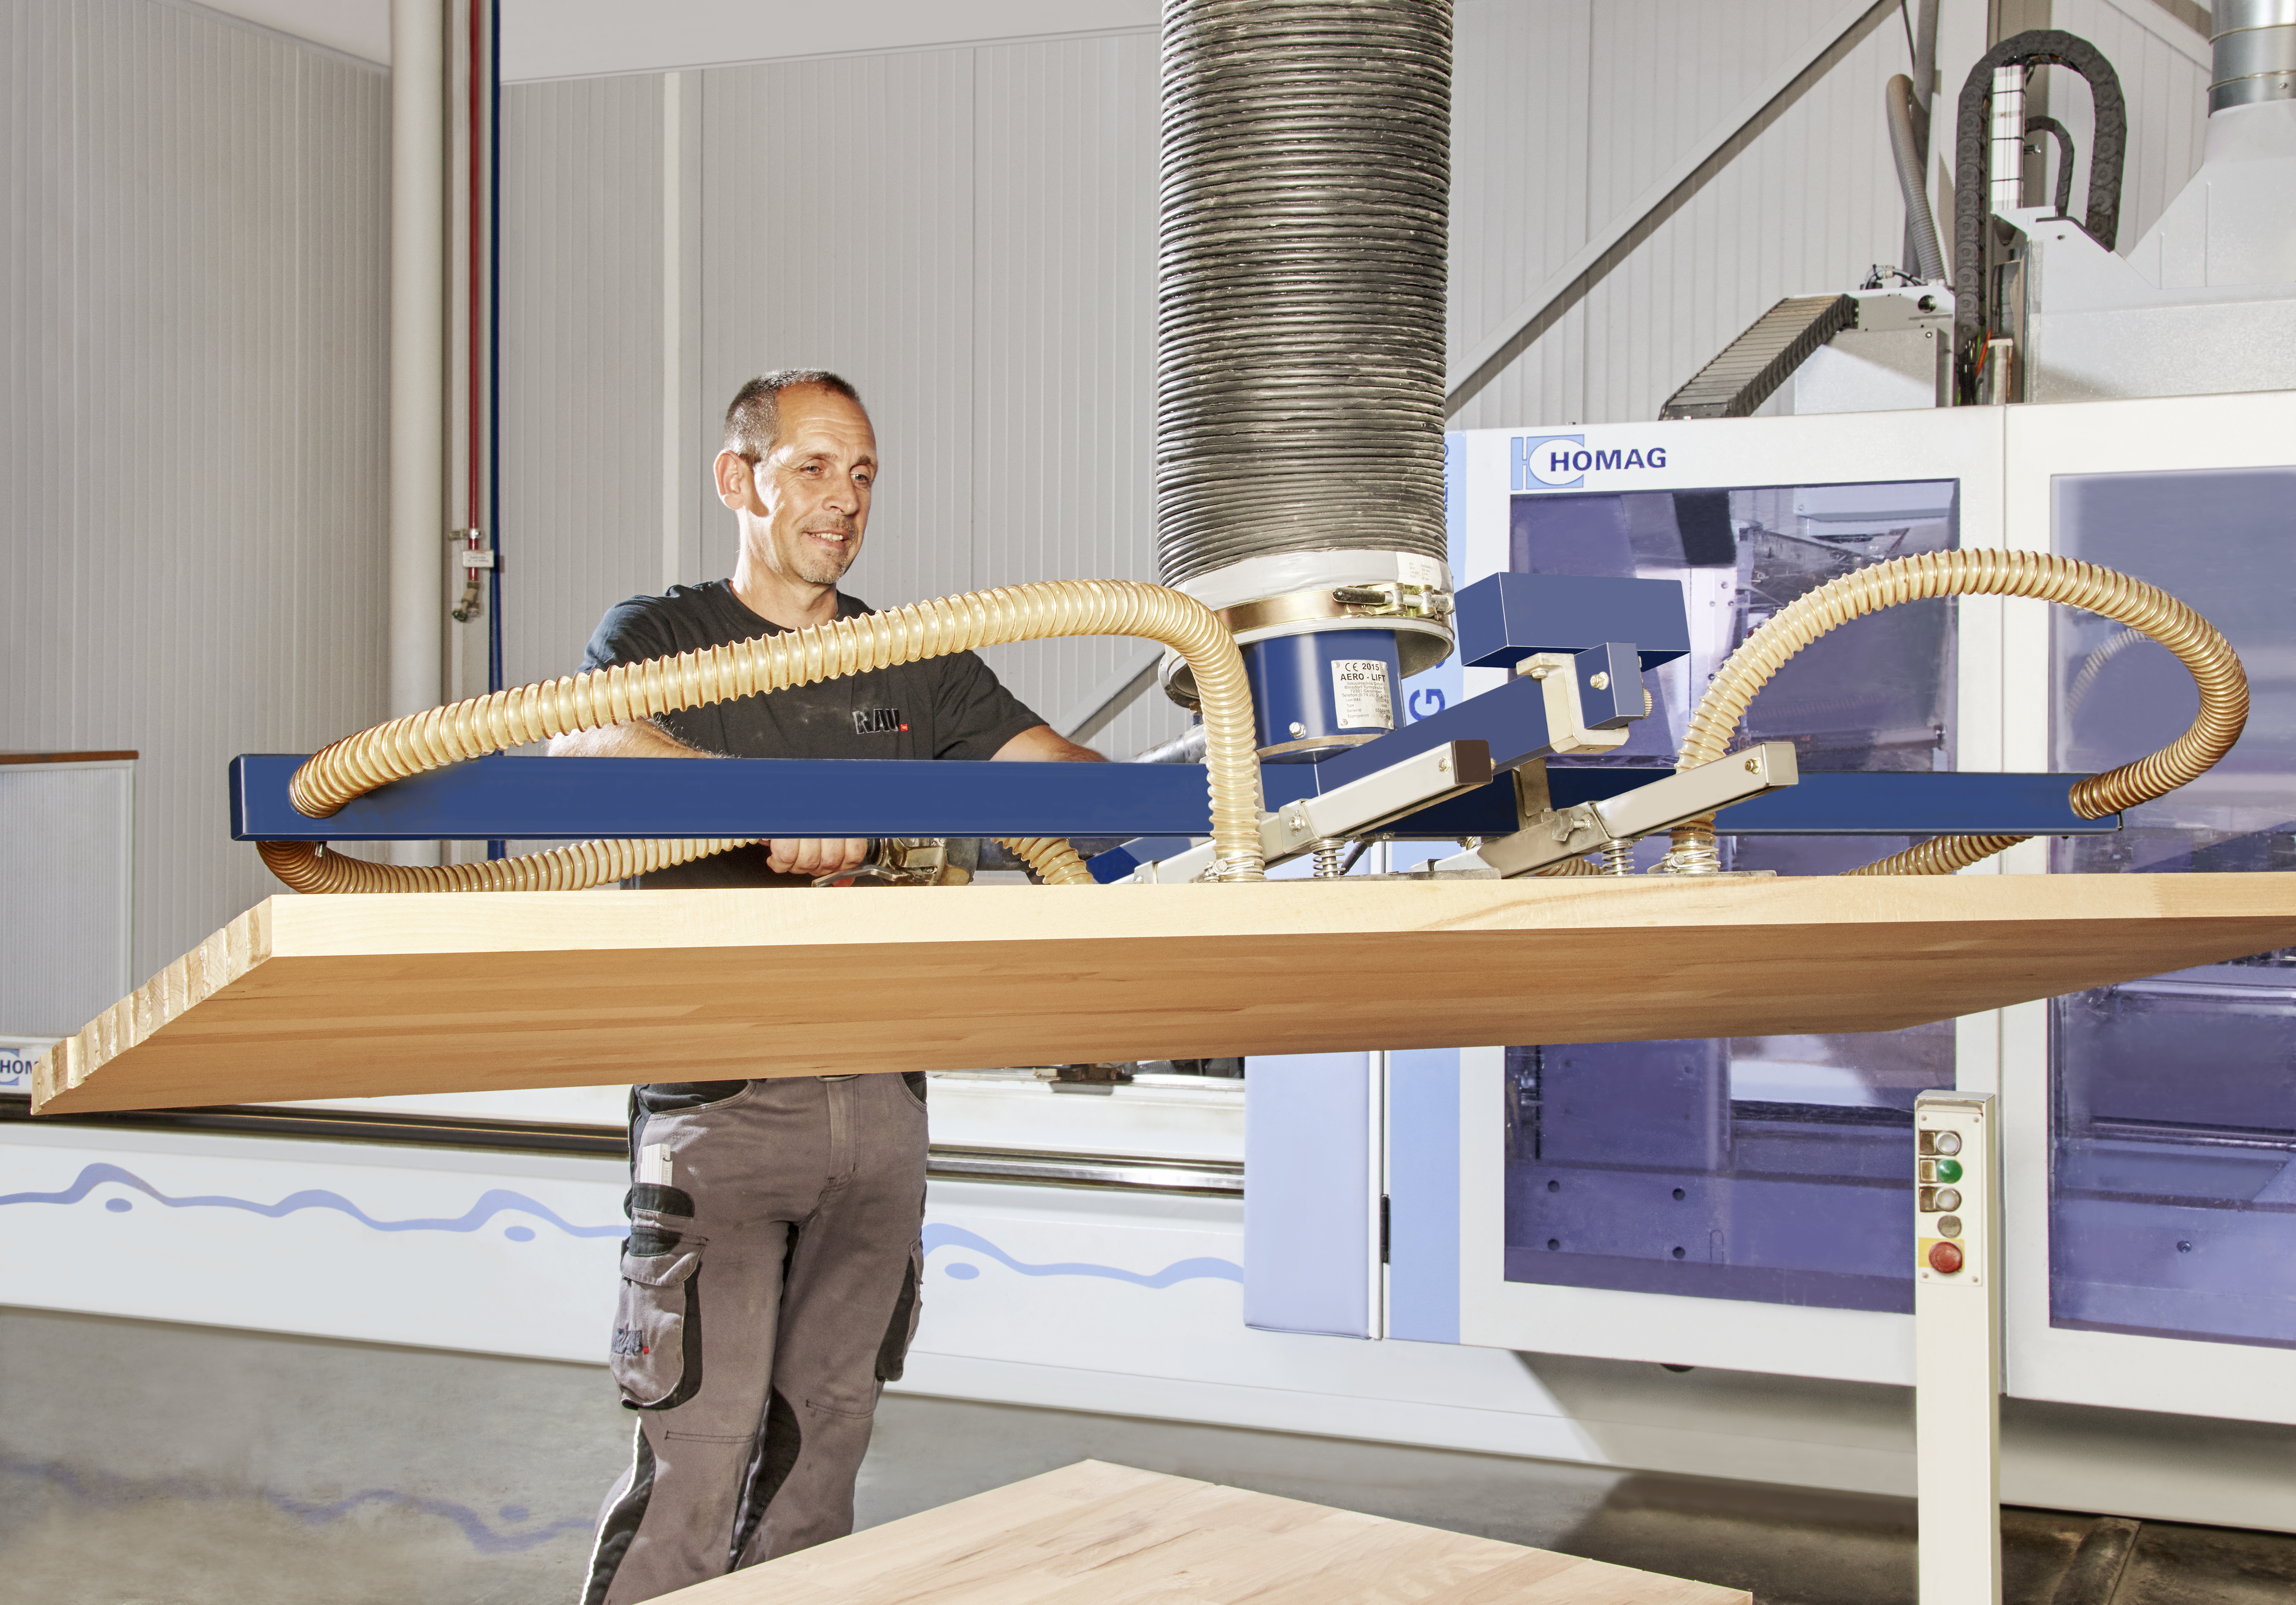 Herstellung von Buche-Massiv-Arbeitsplatten mit ausgesuchtem Holz aus heimischen Wäldern